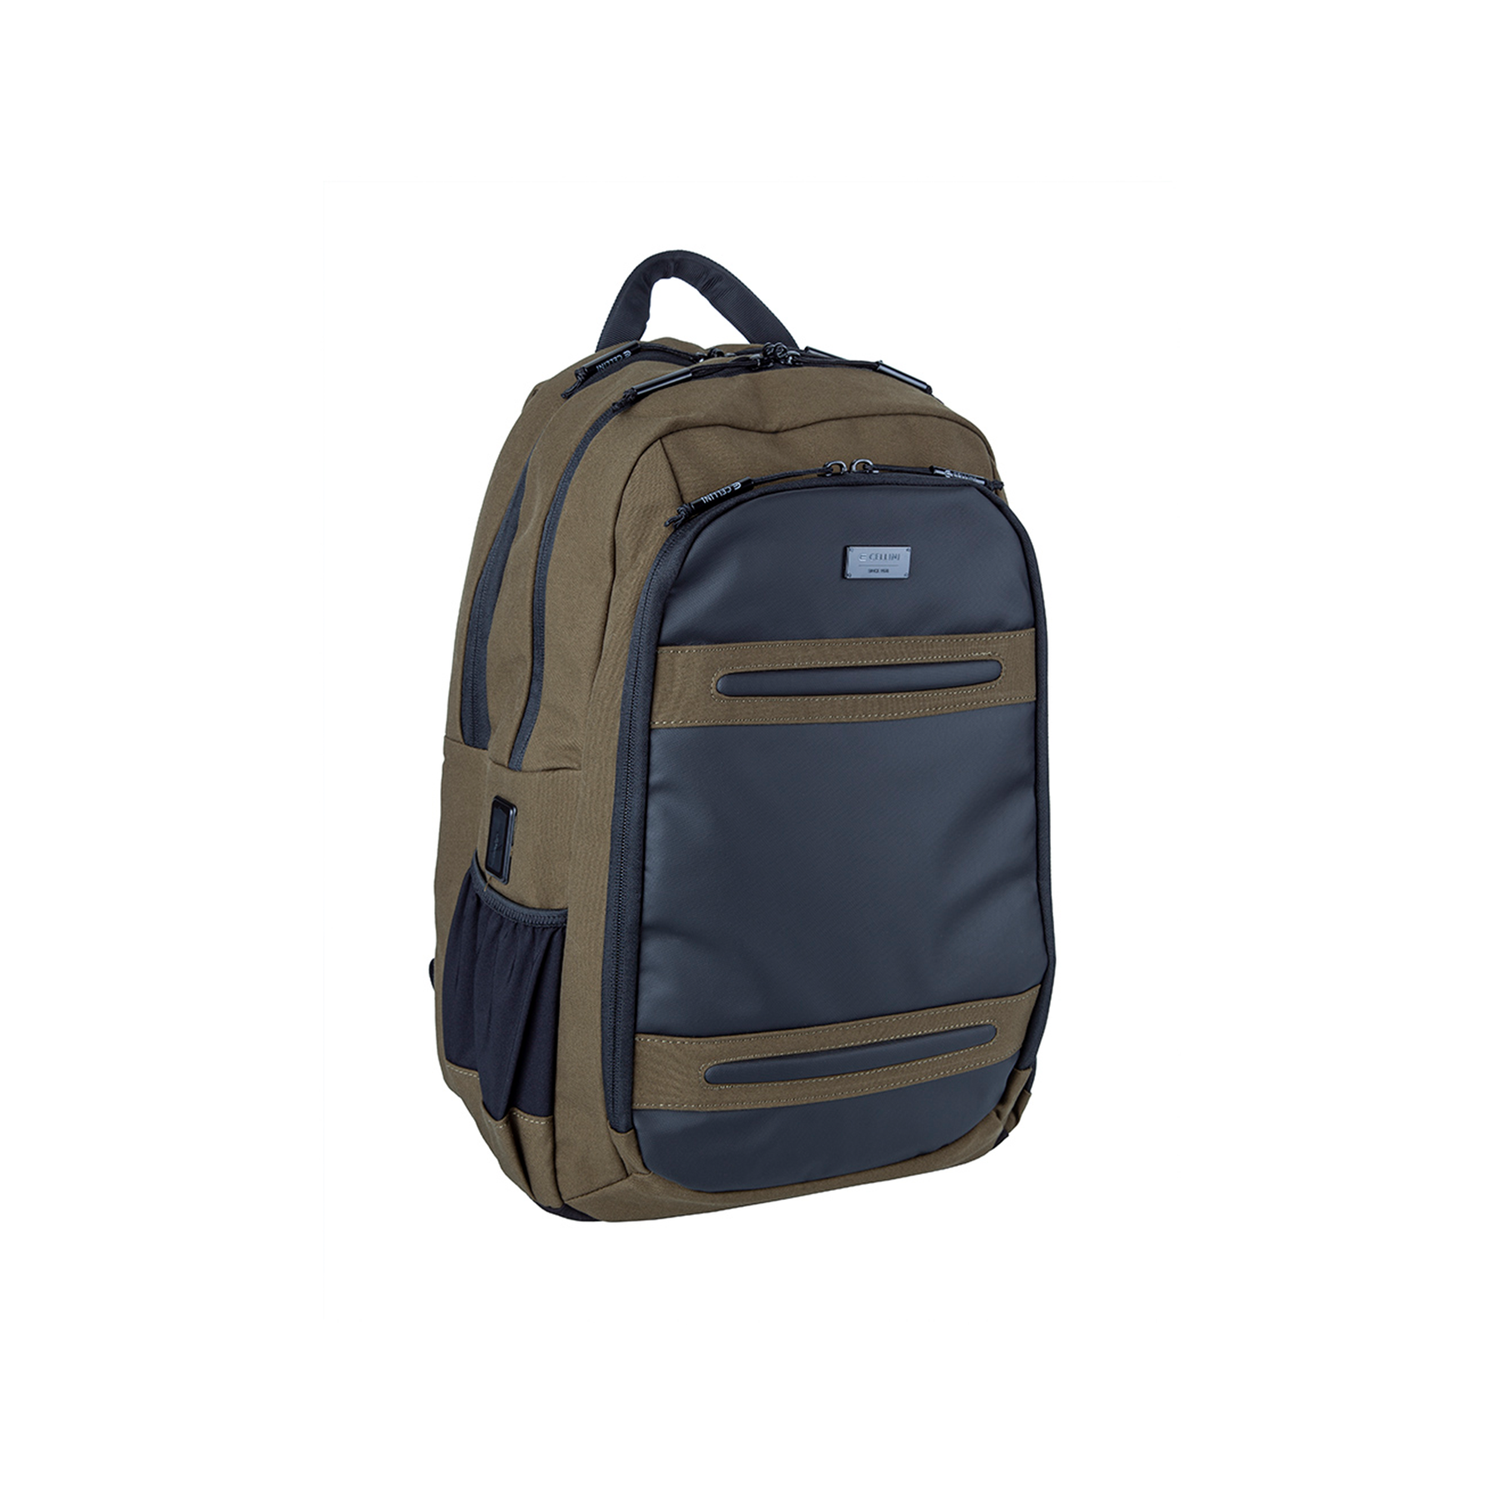 Explorer Pro Digital Pro Backpack